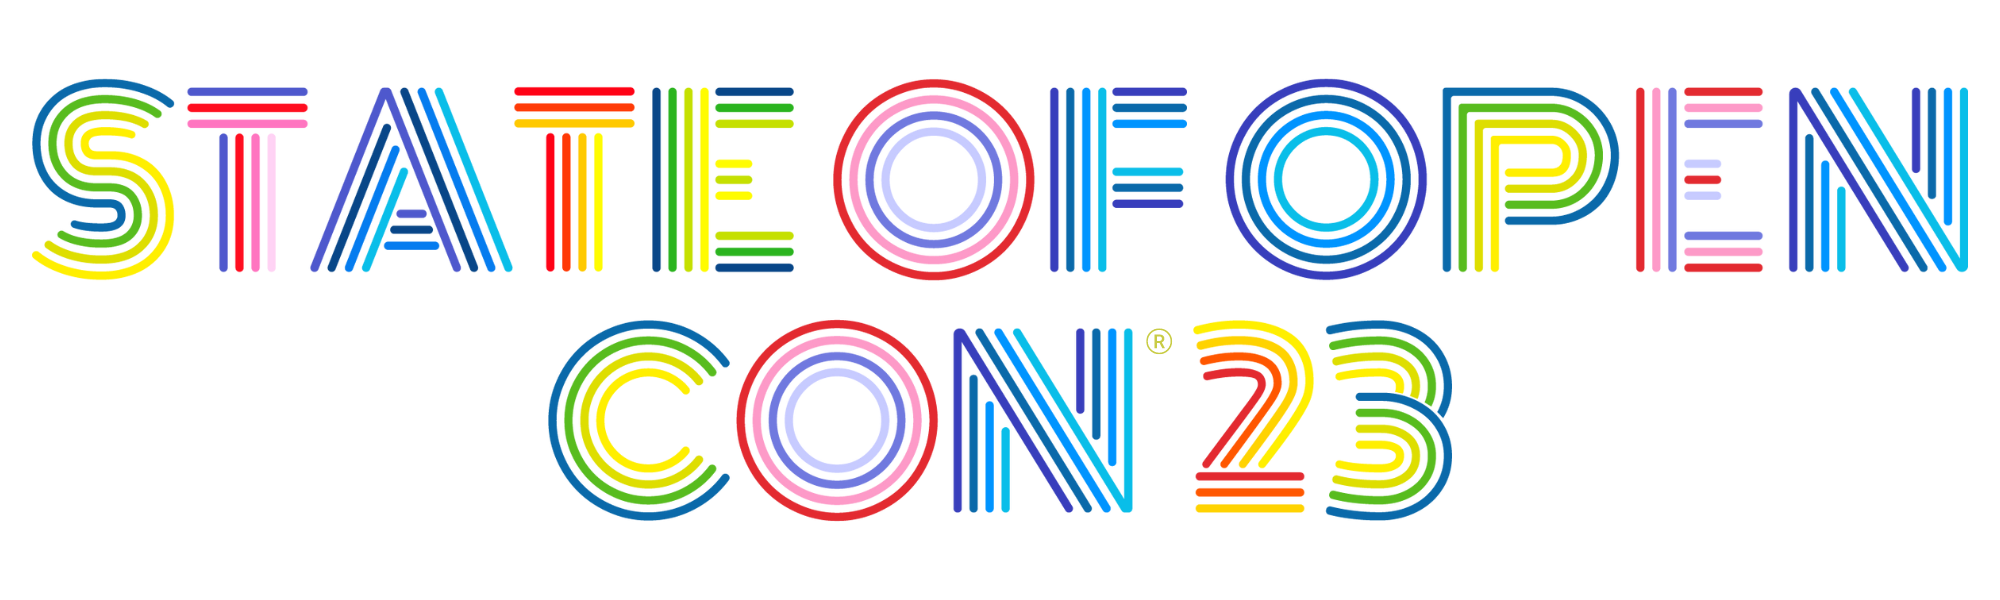 Soocon logo